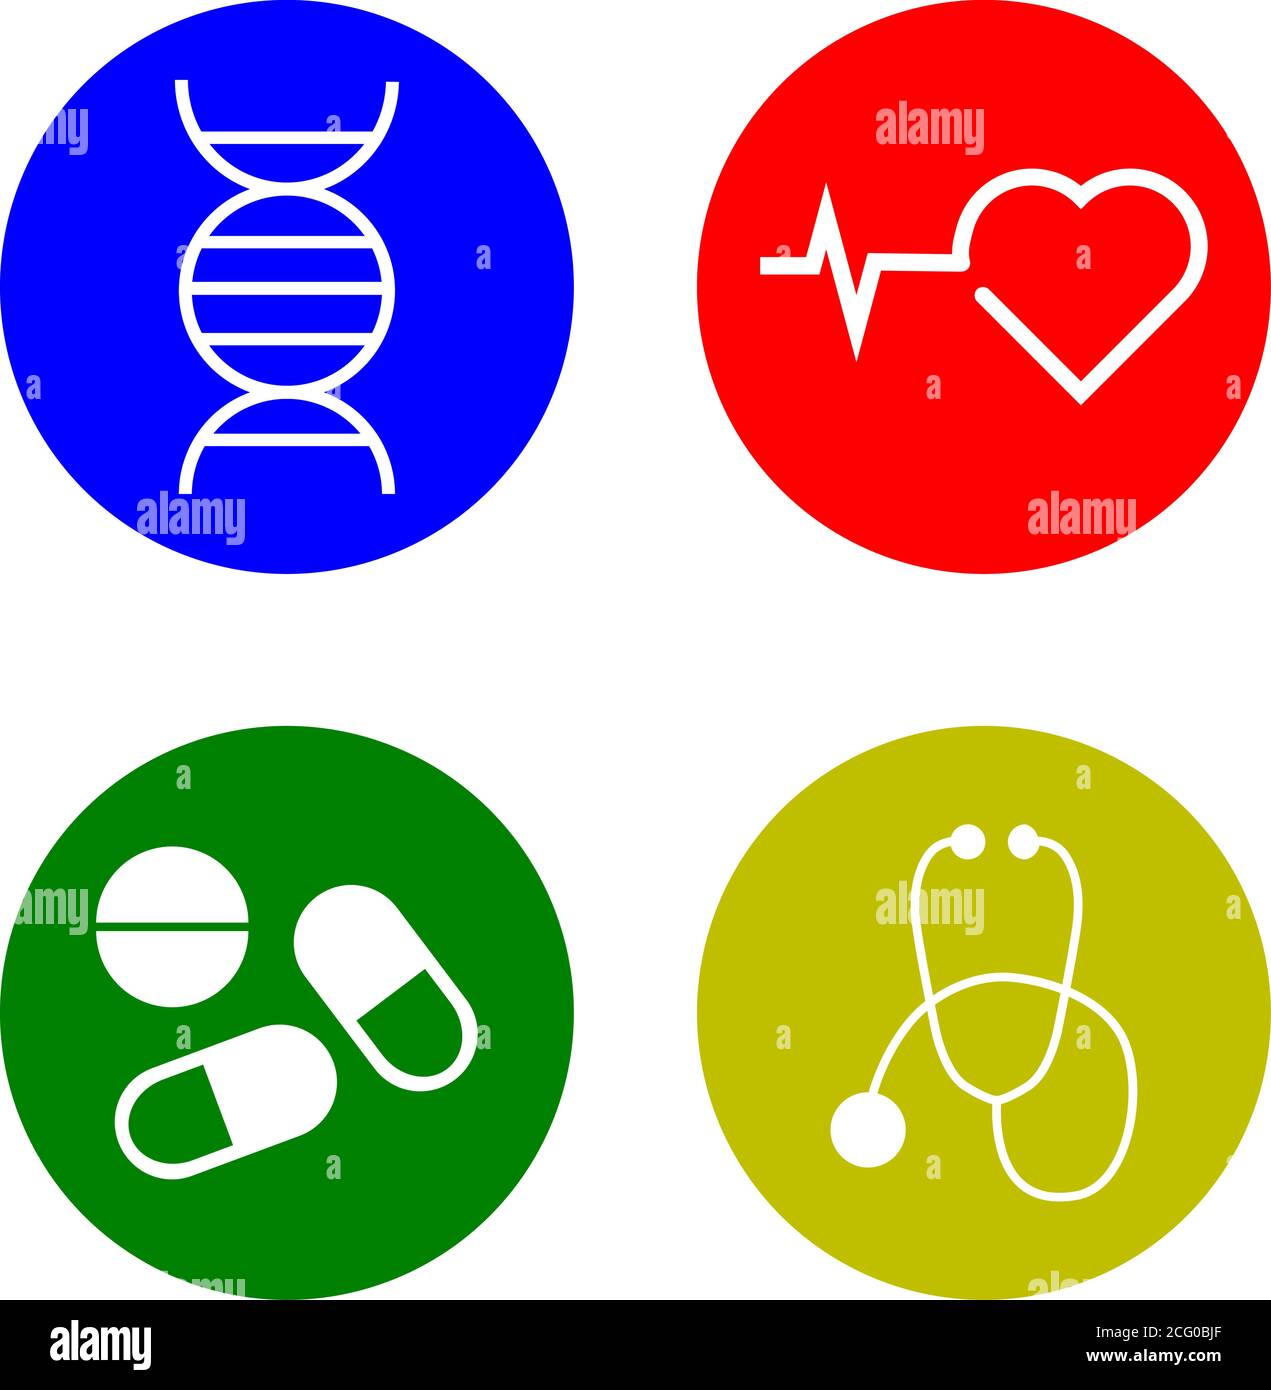 Un ensemble d'icônes avec quatre icônes sur le thème des soins de santé Illustration de Vecteur